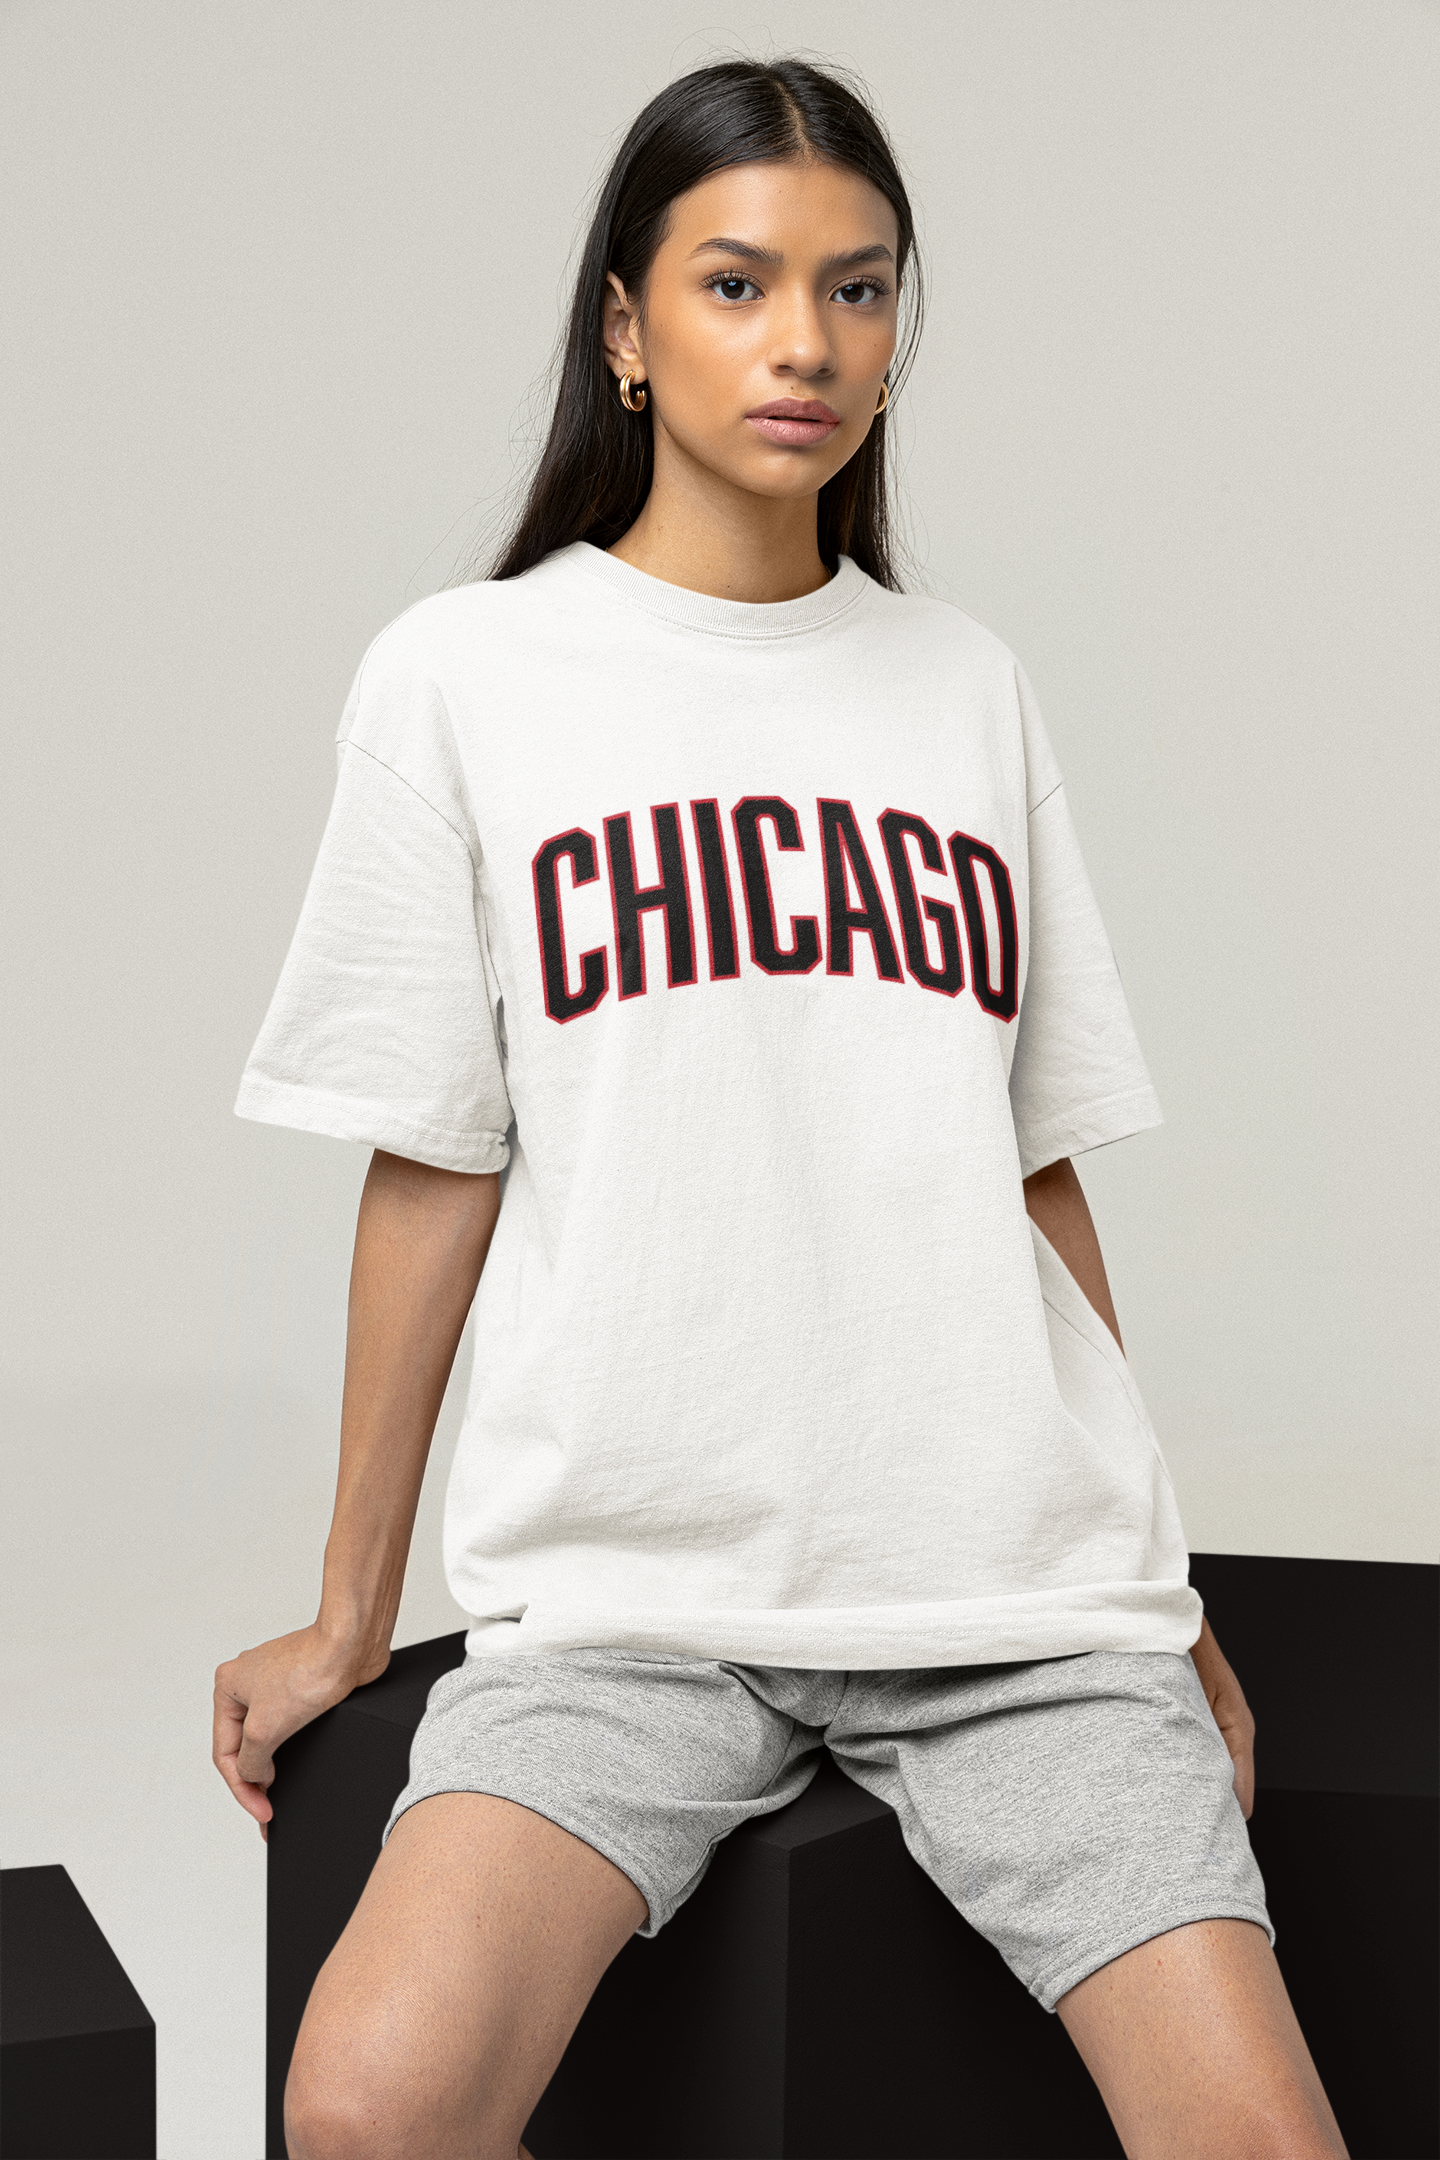 Tee-shirt Chicago